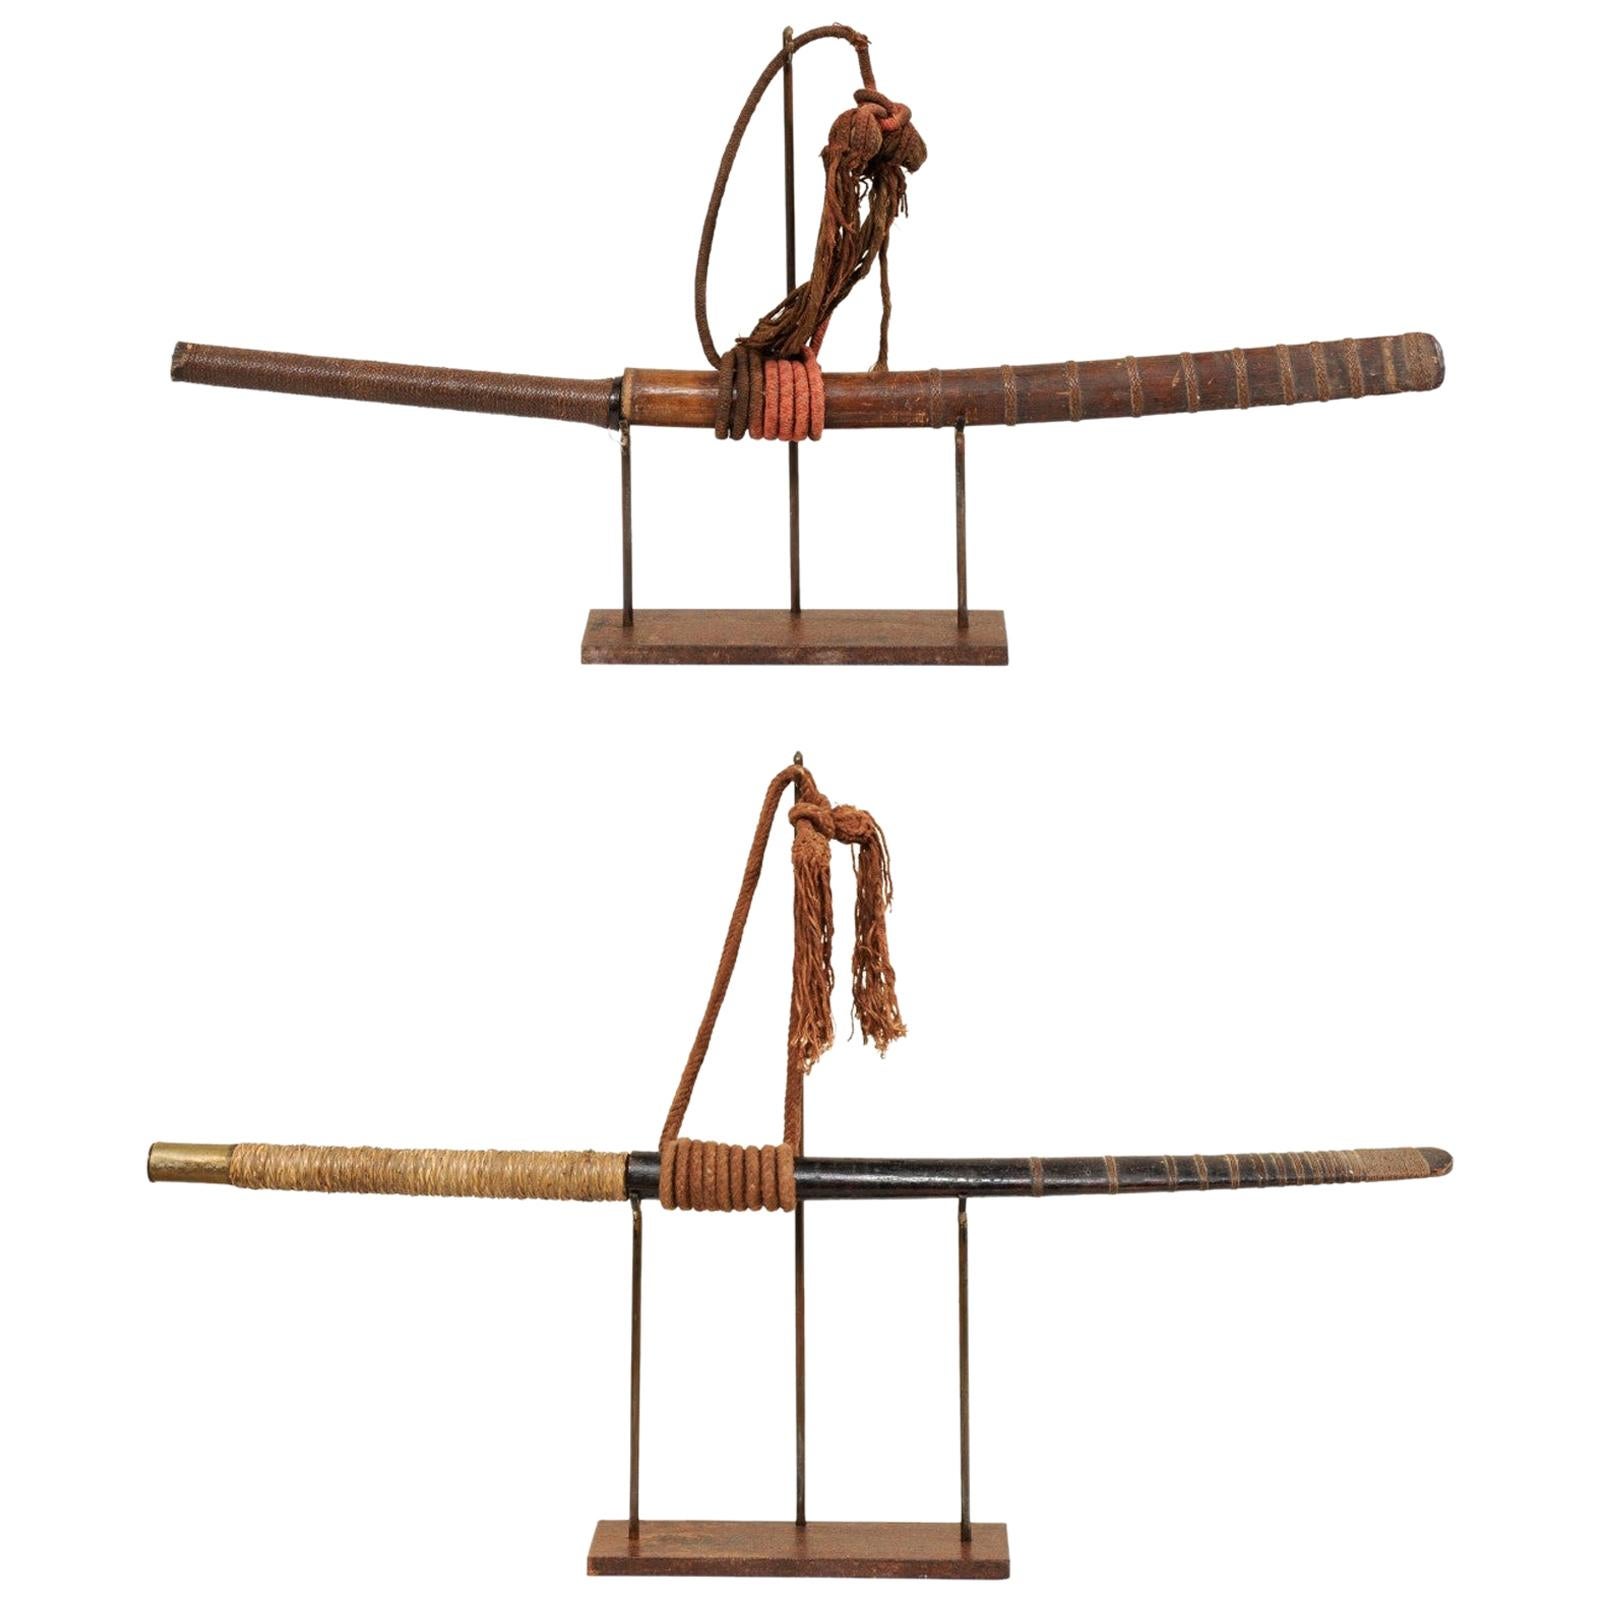 Paire d'épées de Daab laïtiennes du 19ème siècle présentées sur des supports personnalisés